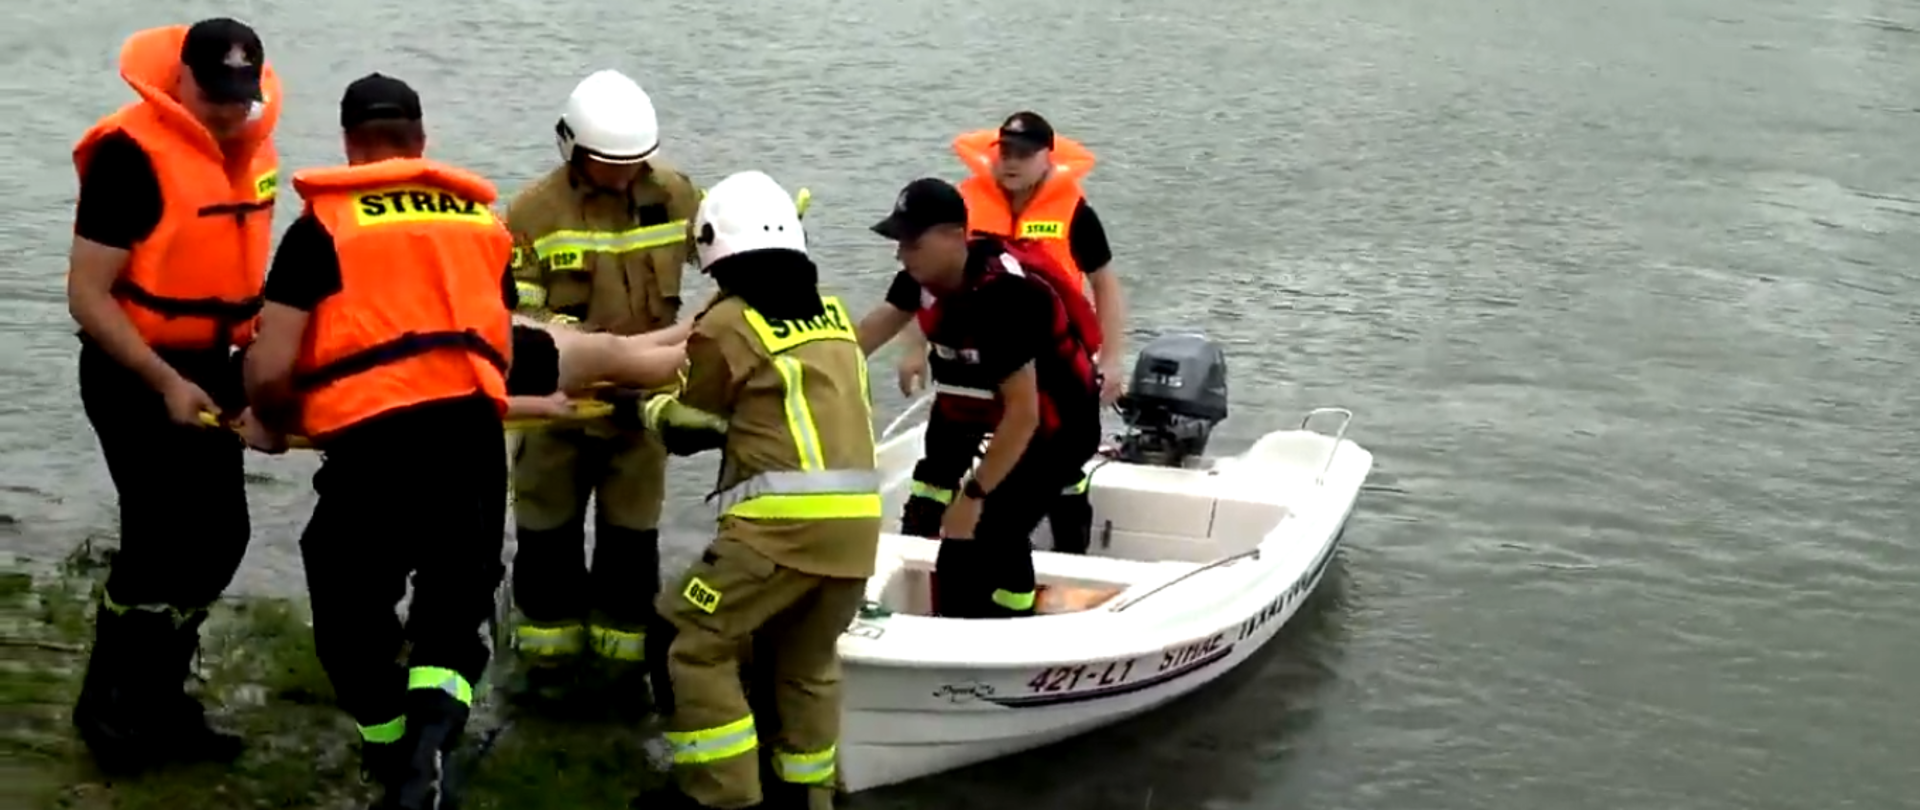 Zbiornik wodny a na nim łódka w kolorze białym z napisem straż. W łódce dwaj strażacy w kamizelkach ratunkowych. Na brzegu przed łódką czterej strażacy trzymający deskę ratowniczą . Na desce znajduje się osoba poszkodowana.